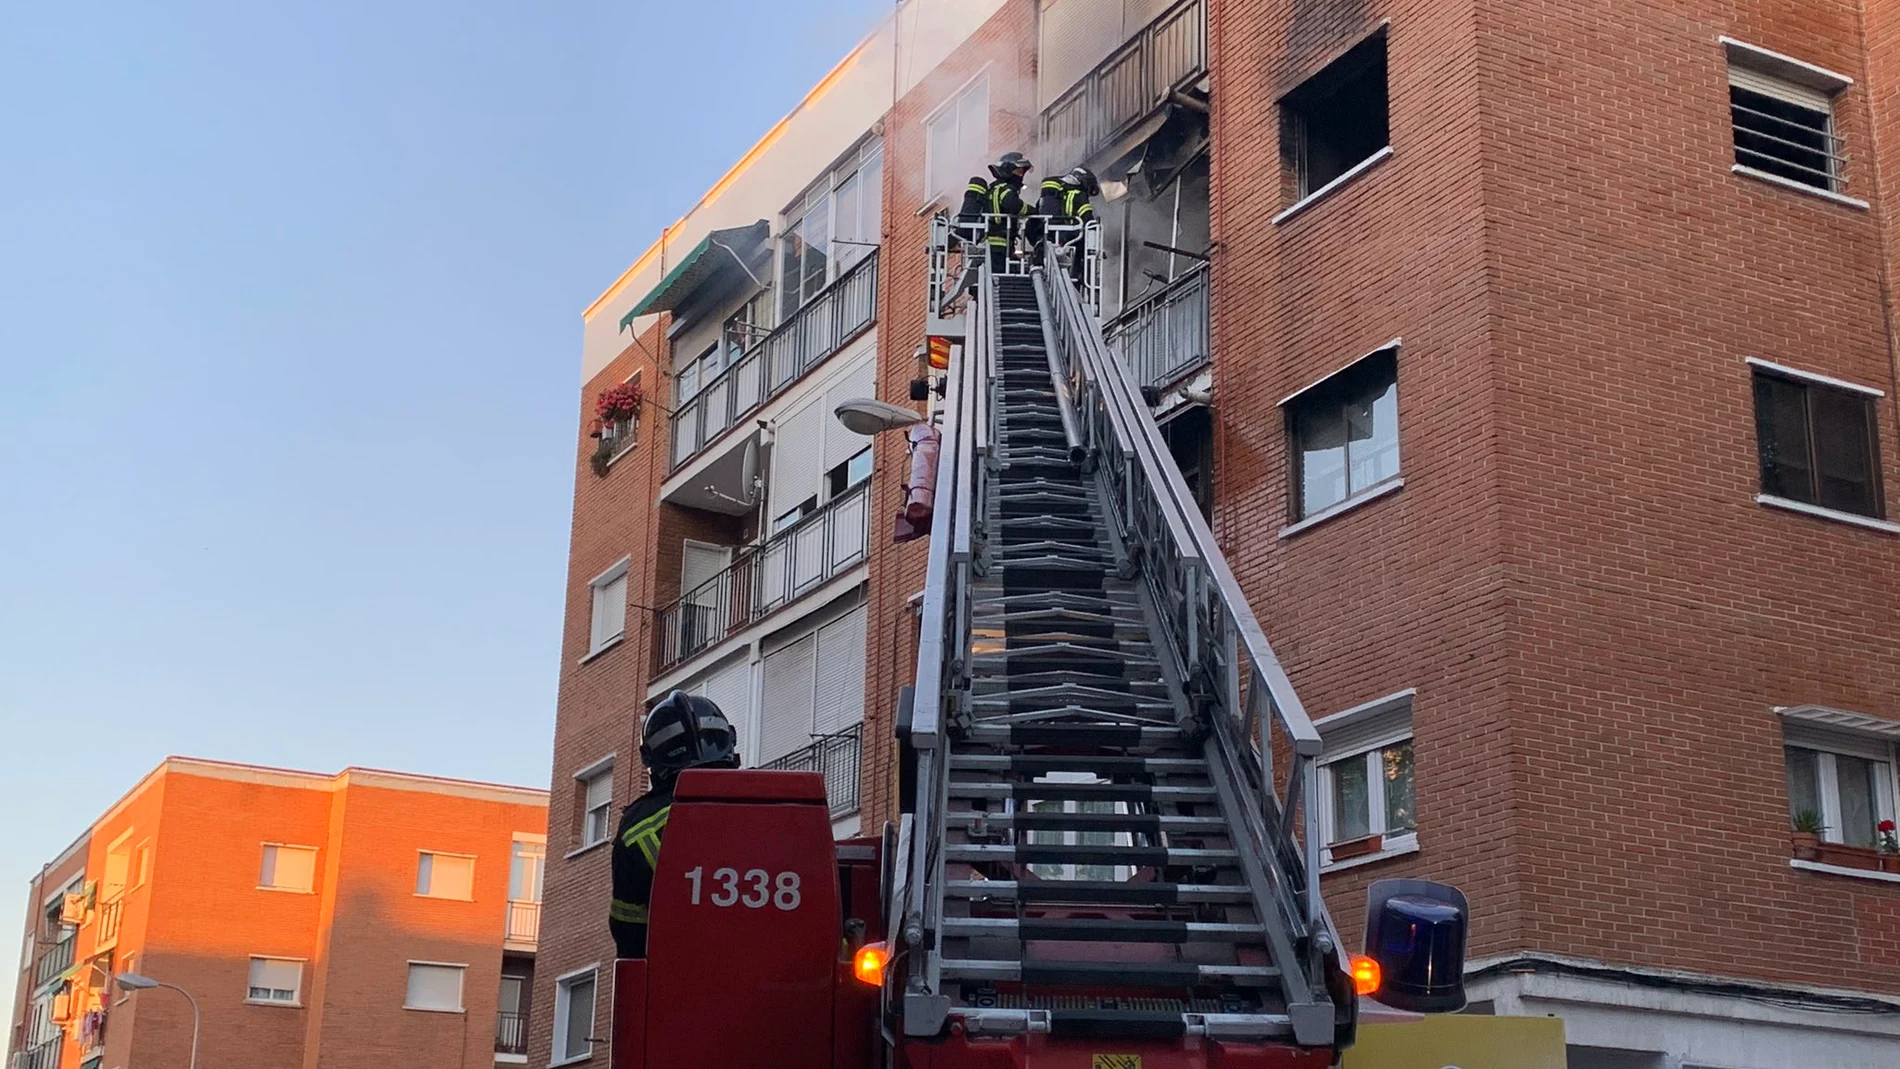 Incendio en un piso de la calle Sahara del distrito de Villaverde, Madrid. Un fallecido